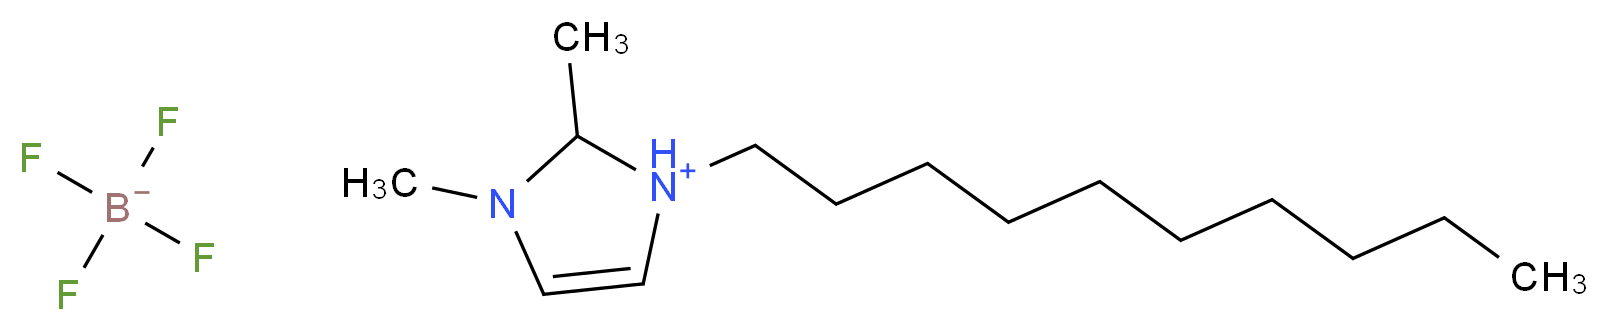 640282-11-7 molecular structure